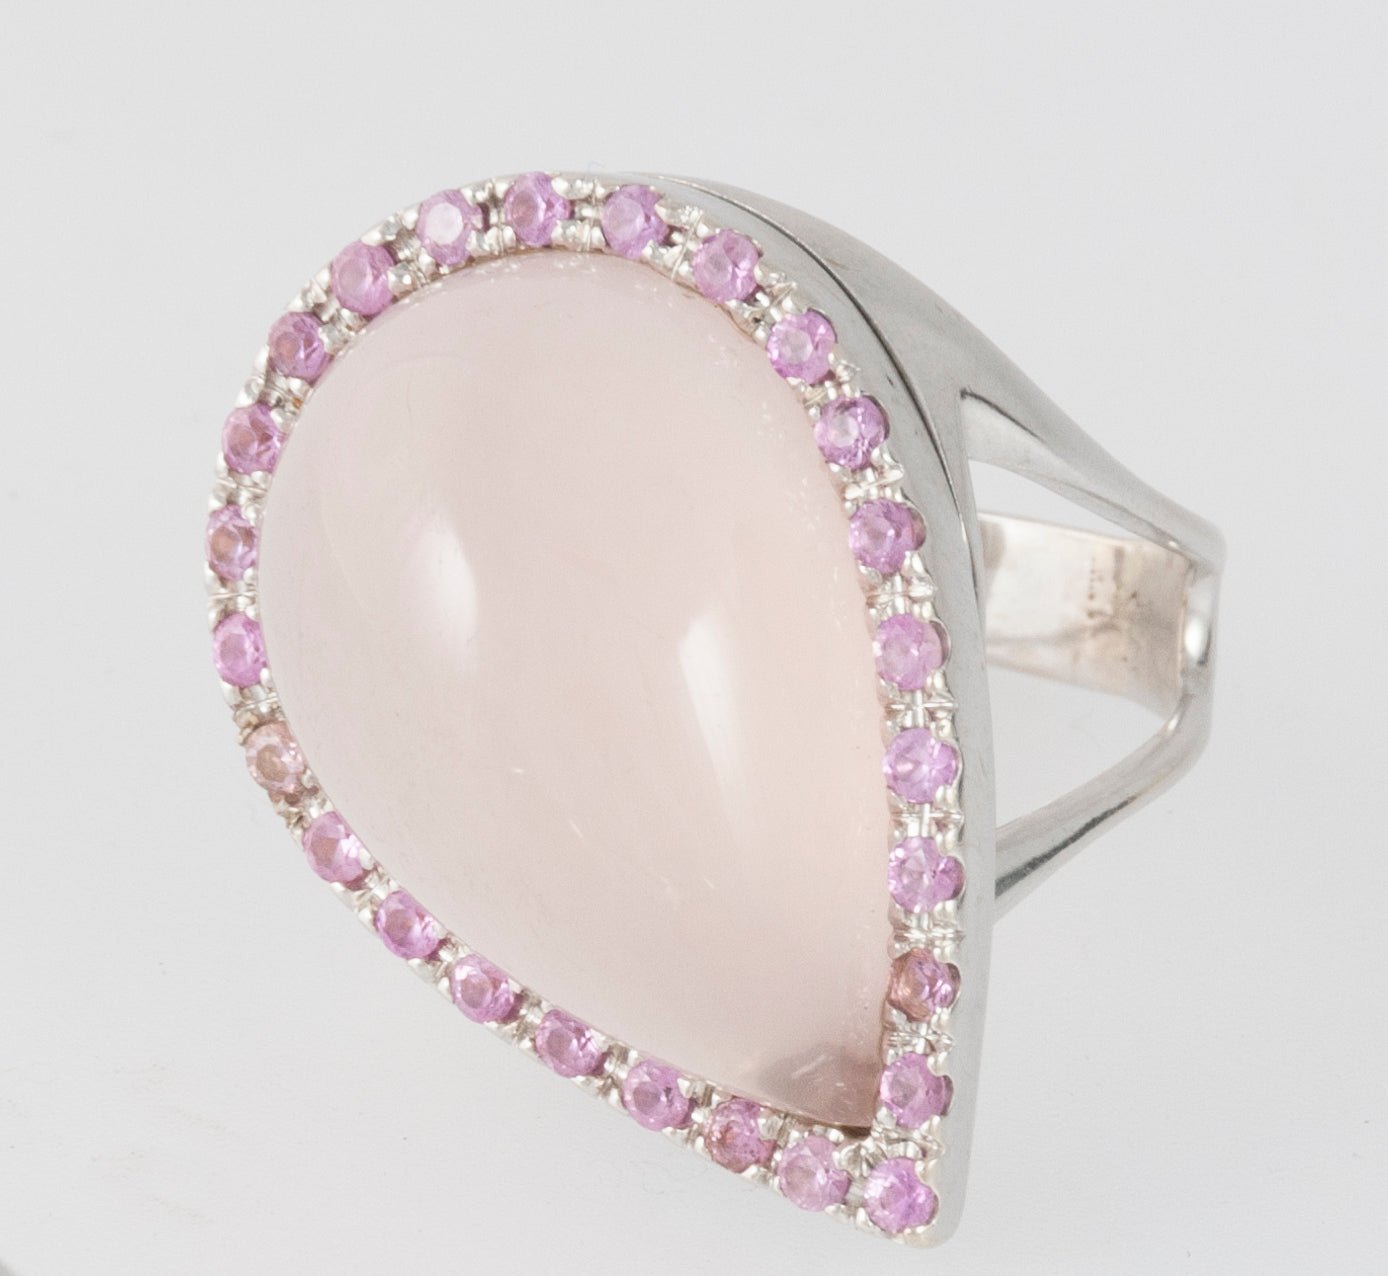 Conjunto pendientes y anillo en oro blanco 18k cuarzo rosa y amatistas(rosas de Francia) - Mayka Jewels